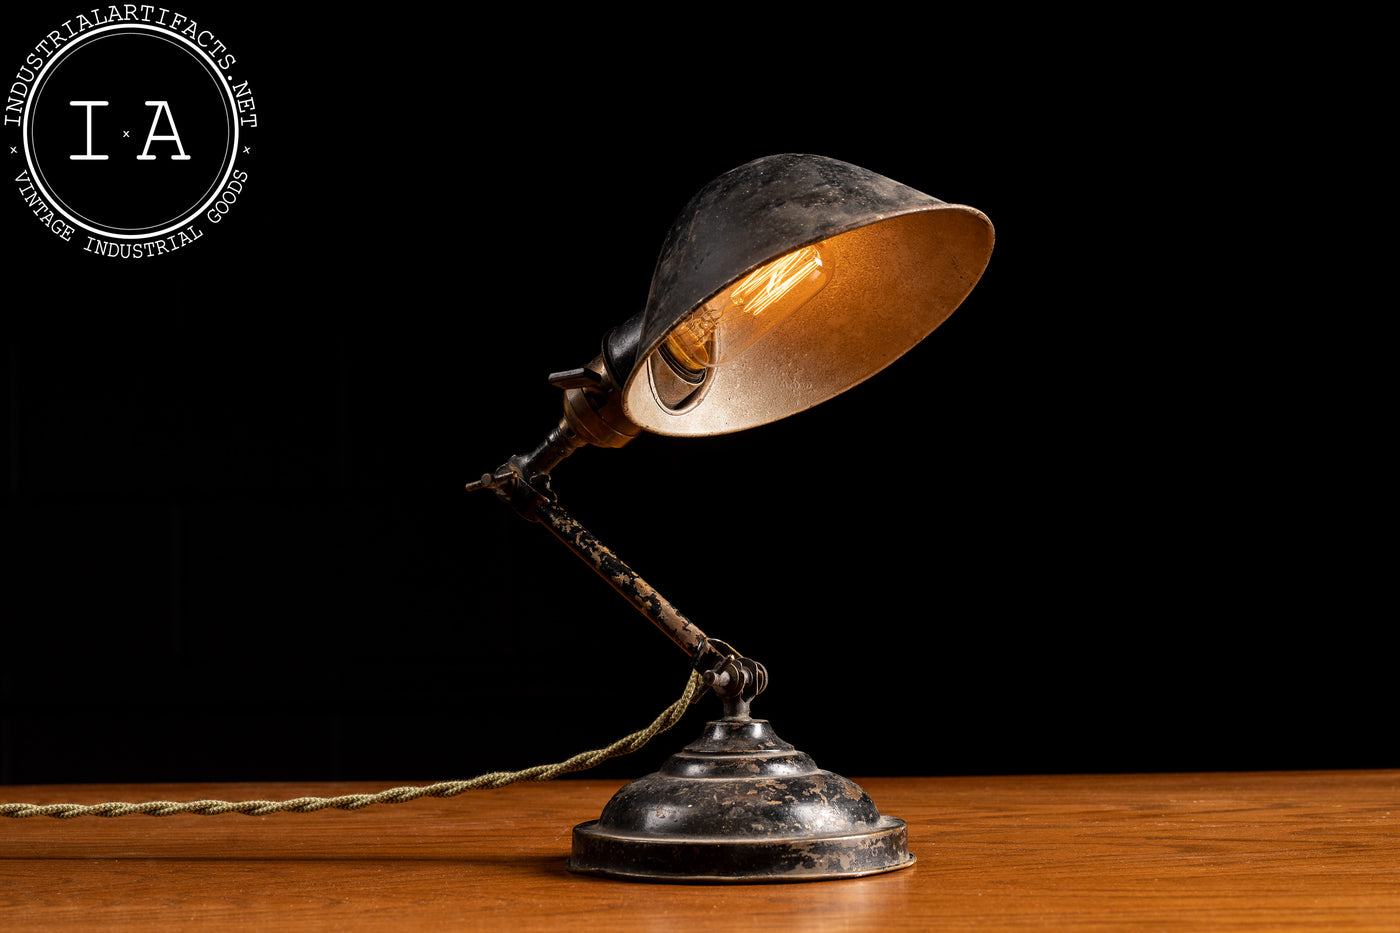 Antique Fairies Articulated Desk Lamp